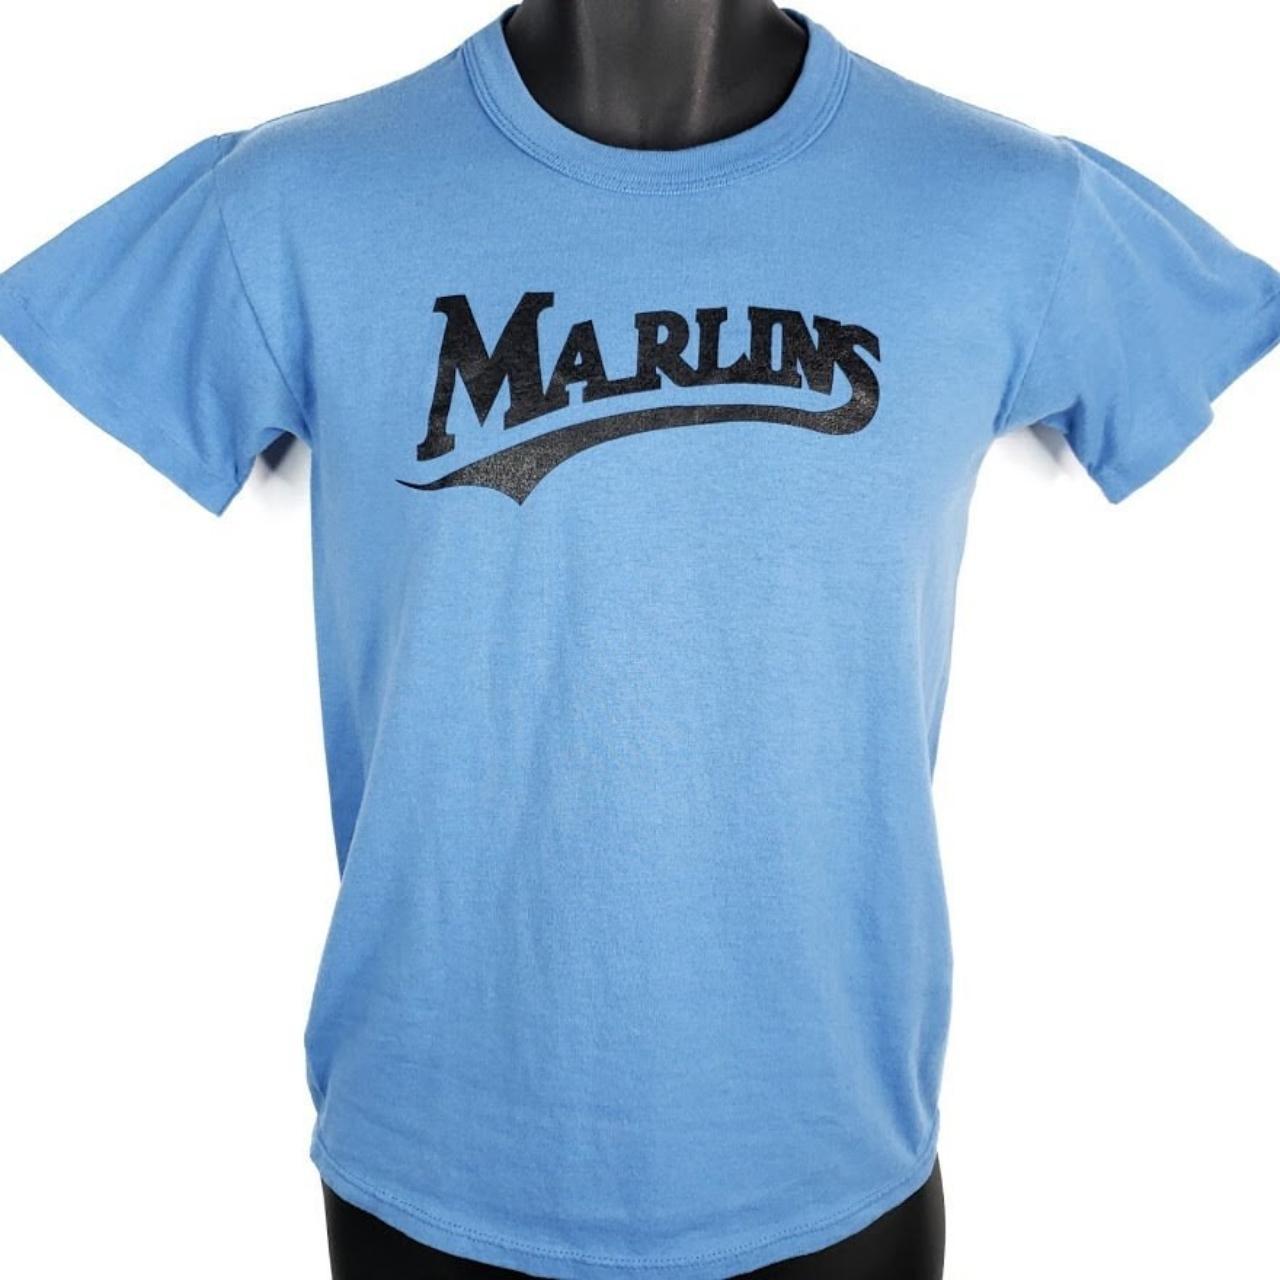 Vintage 90s Essential Florida Marlins Baseball - Depop